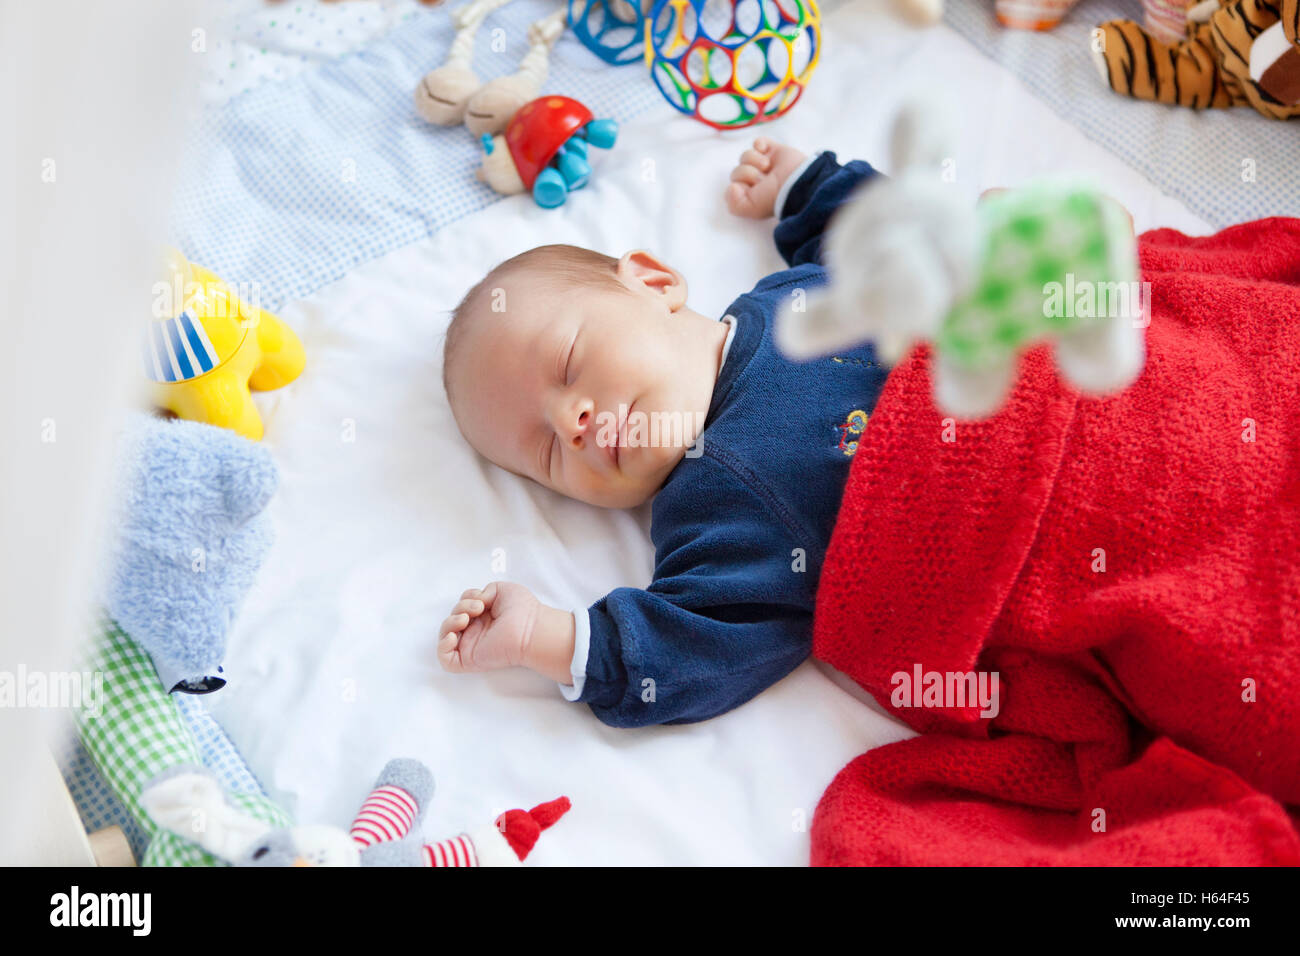 Baby schläft im Laufstall mit Spielzeug Stockfotografie - Alamy